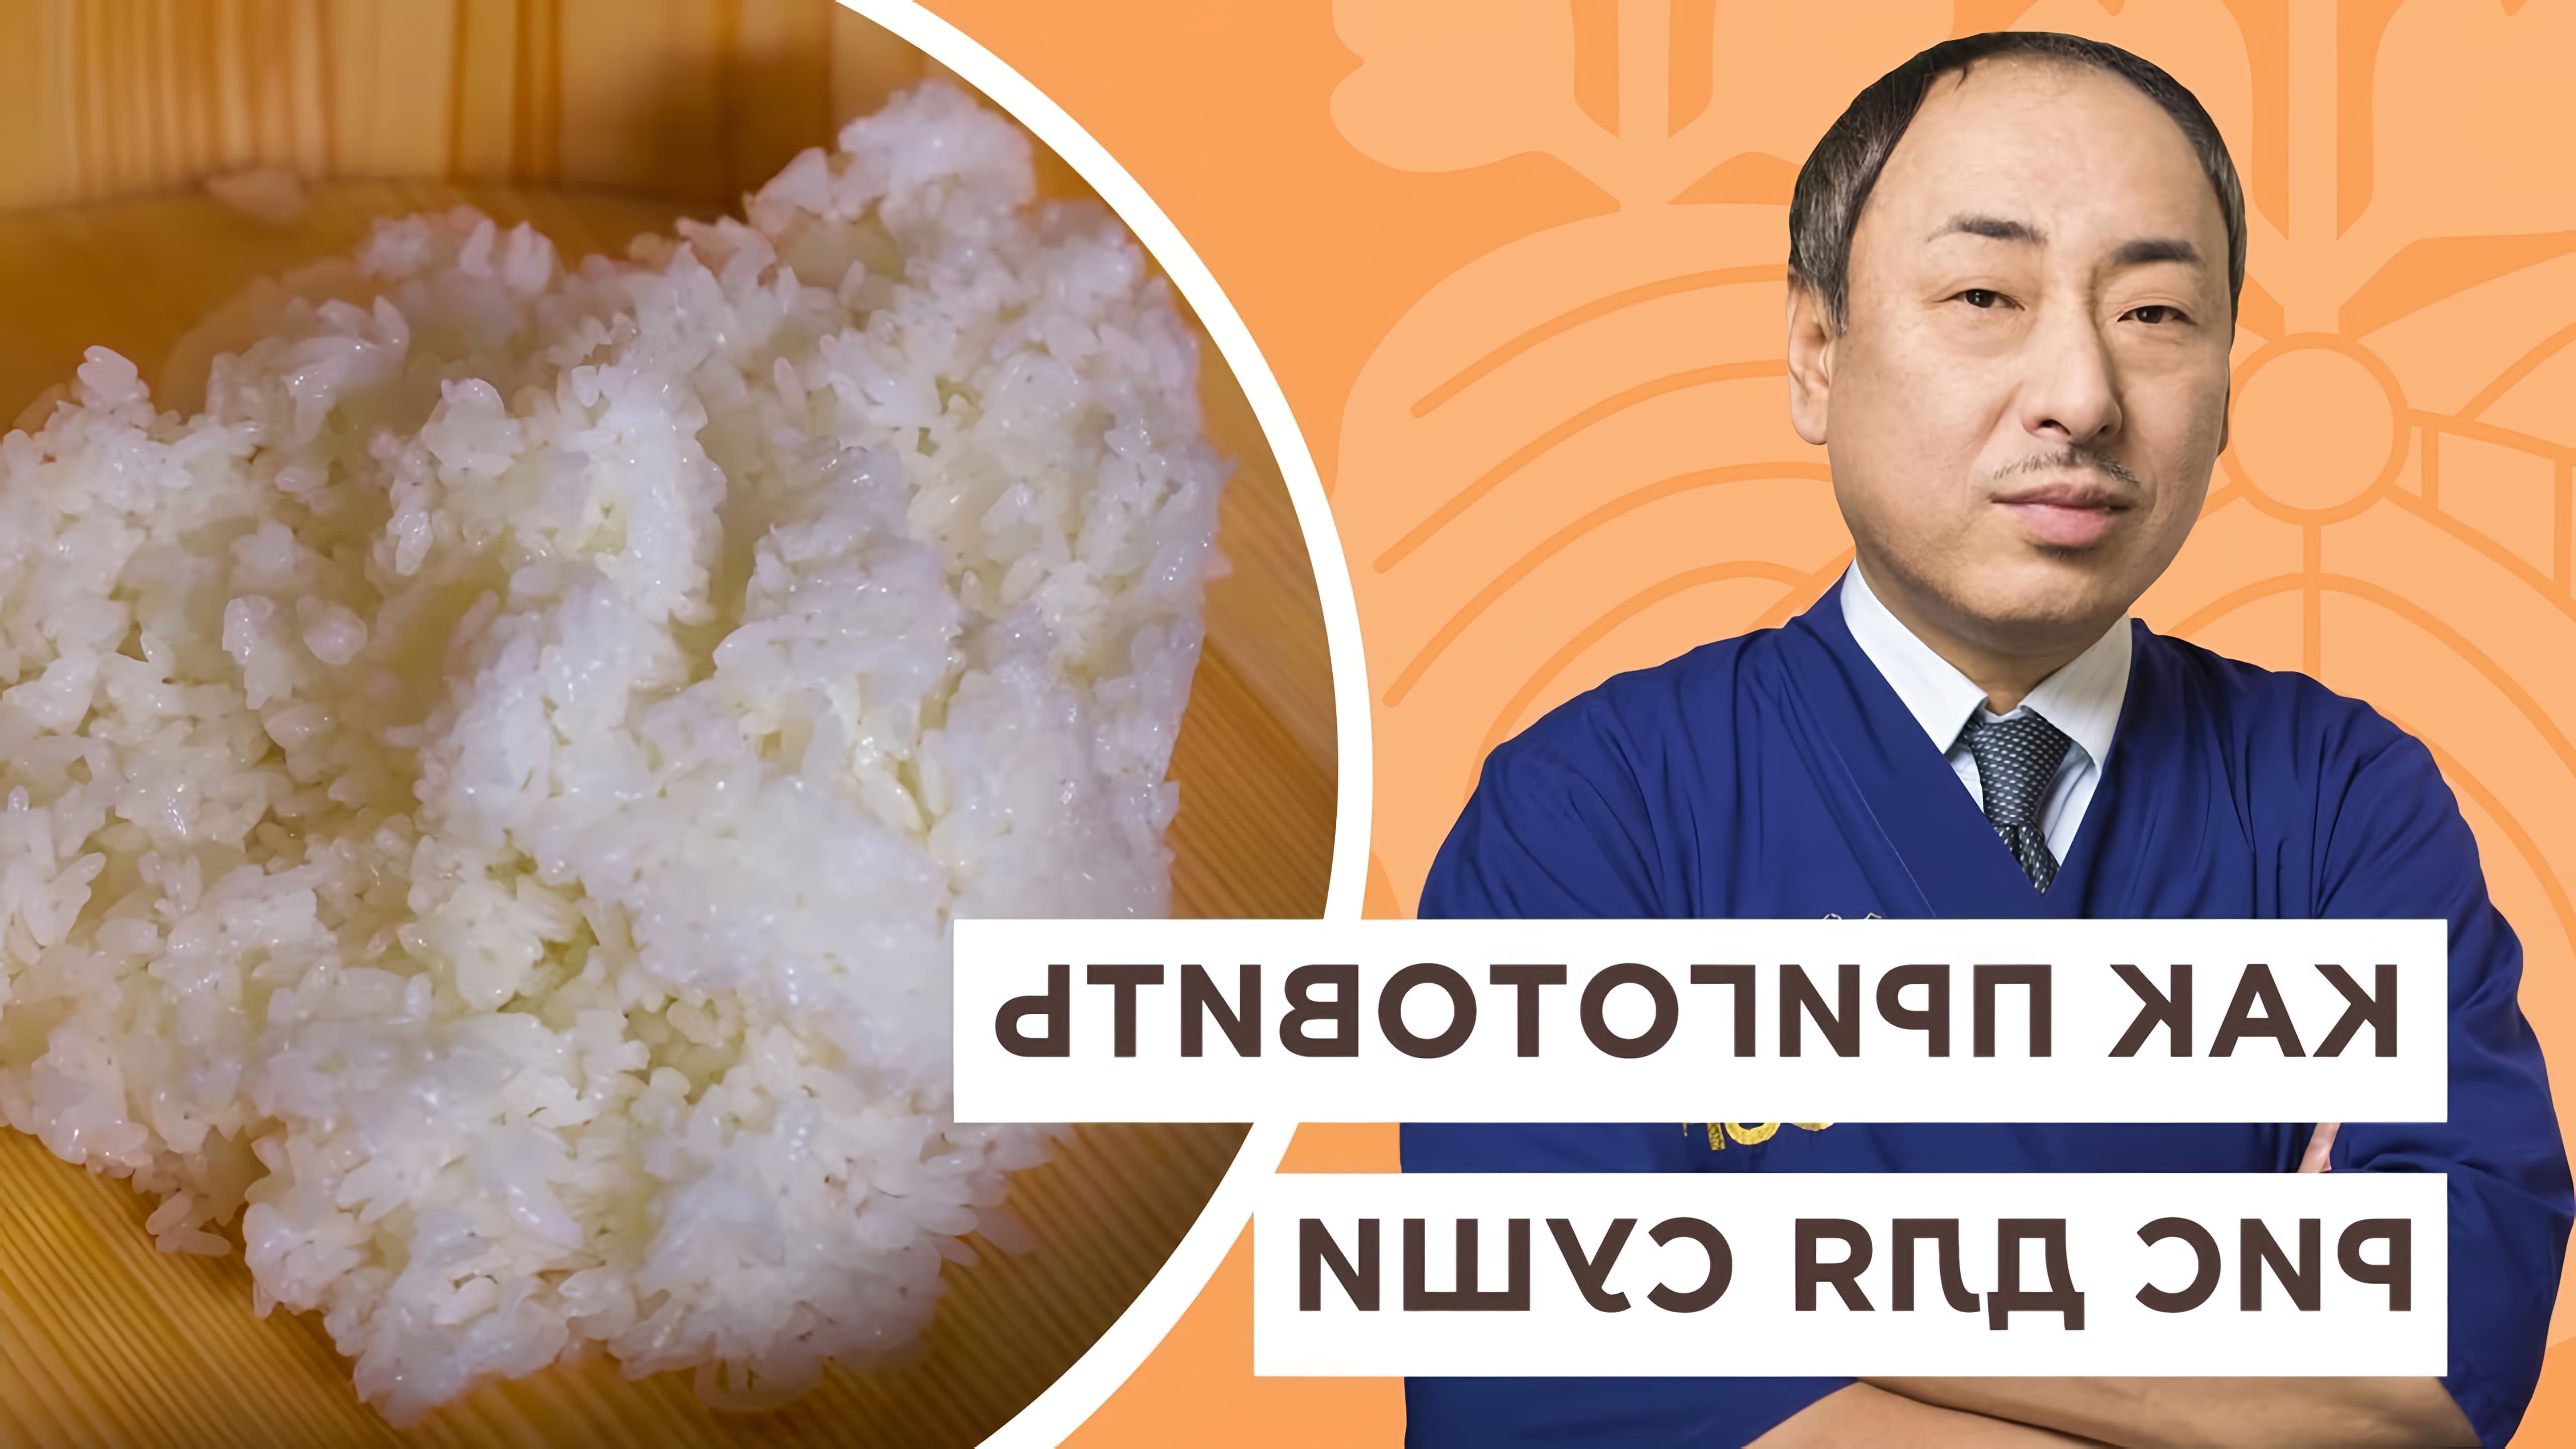 Как варить рис для суши! Рецепты от Шеф повара из Японии, Йоши Фудзивара На этом канале вы увидите множество... 